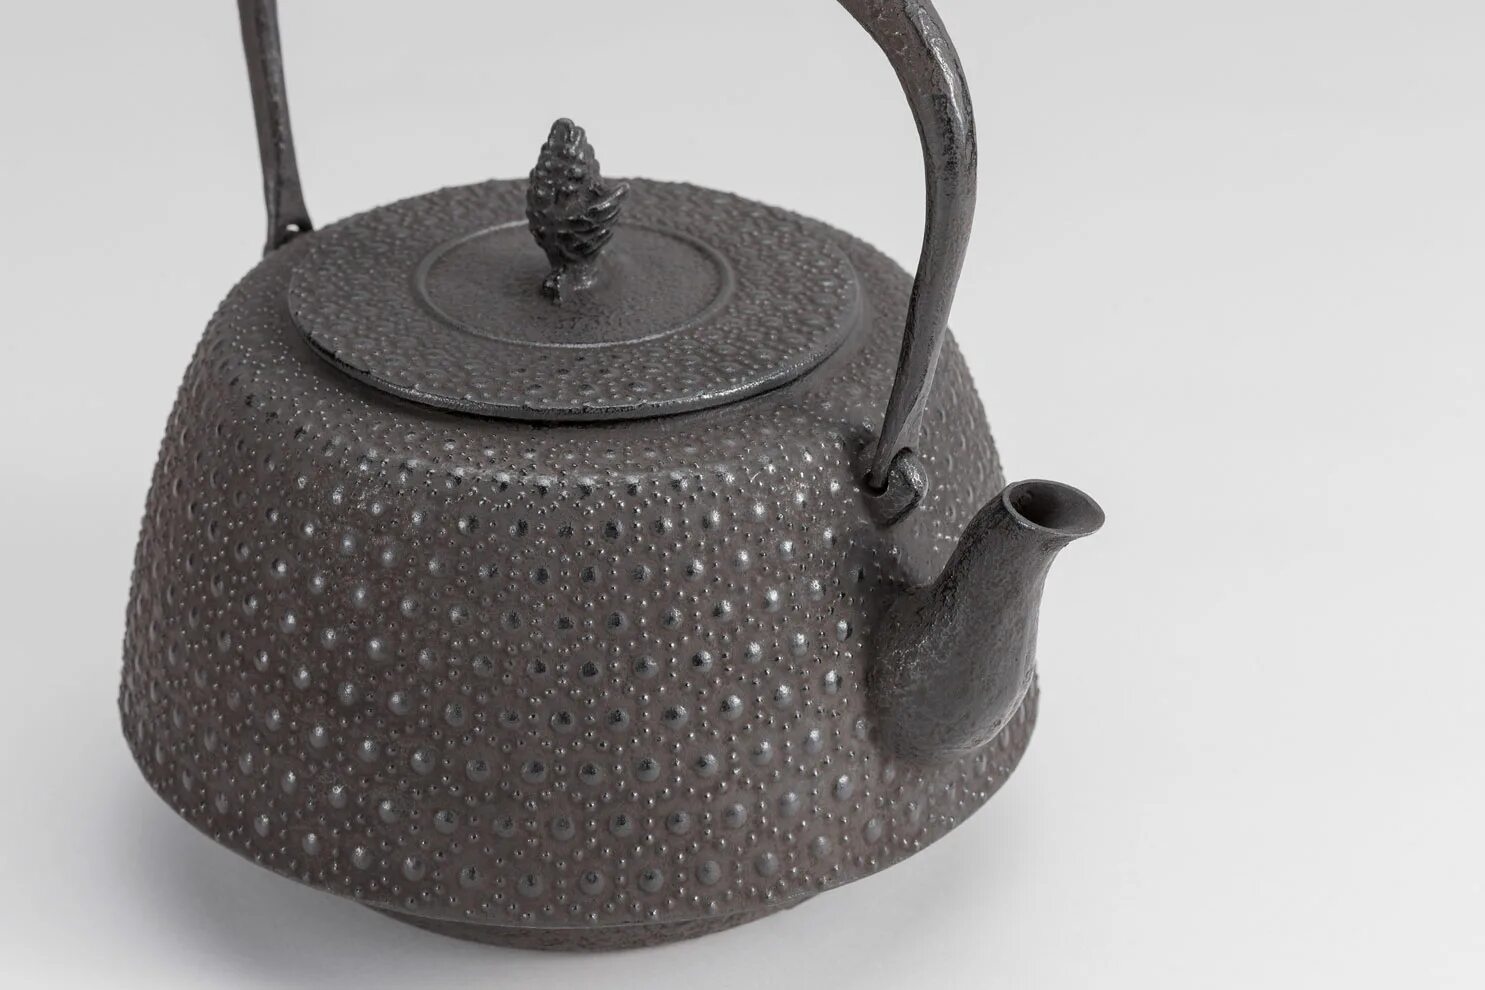 Чайник чугунный Iwachu. Ferro SHOUXI чугунный чайник. Чугунный чайник Dutch Oven ft4.5 Petrom. Чугунный чайник 2 литра.